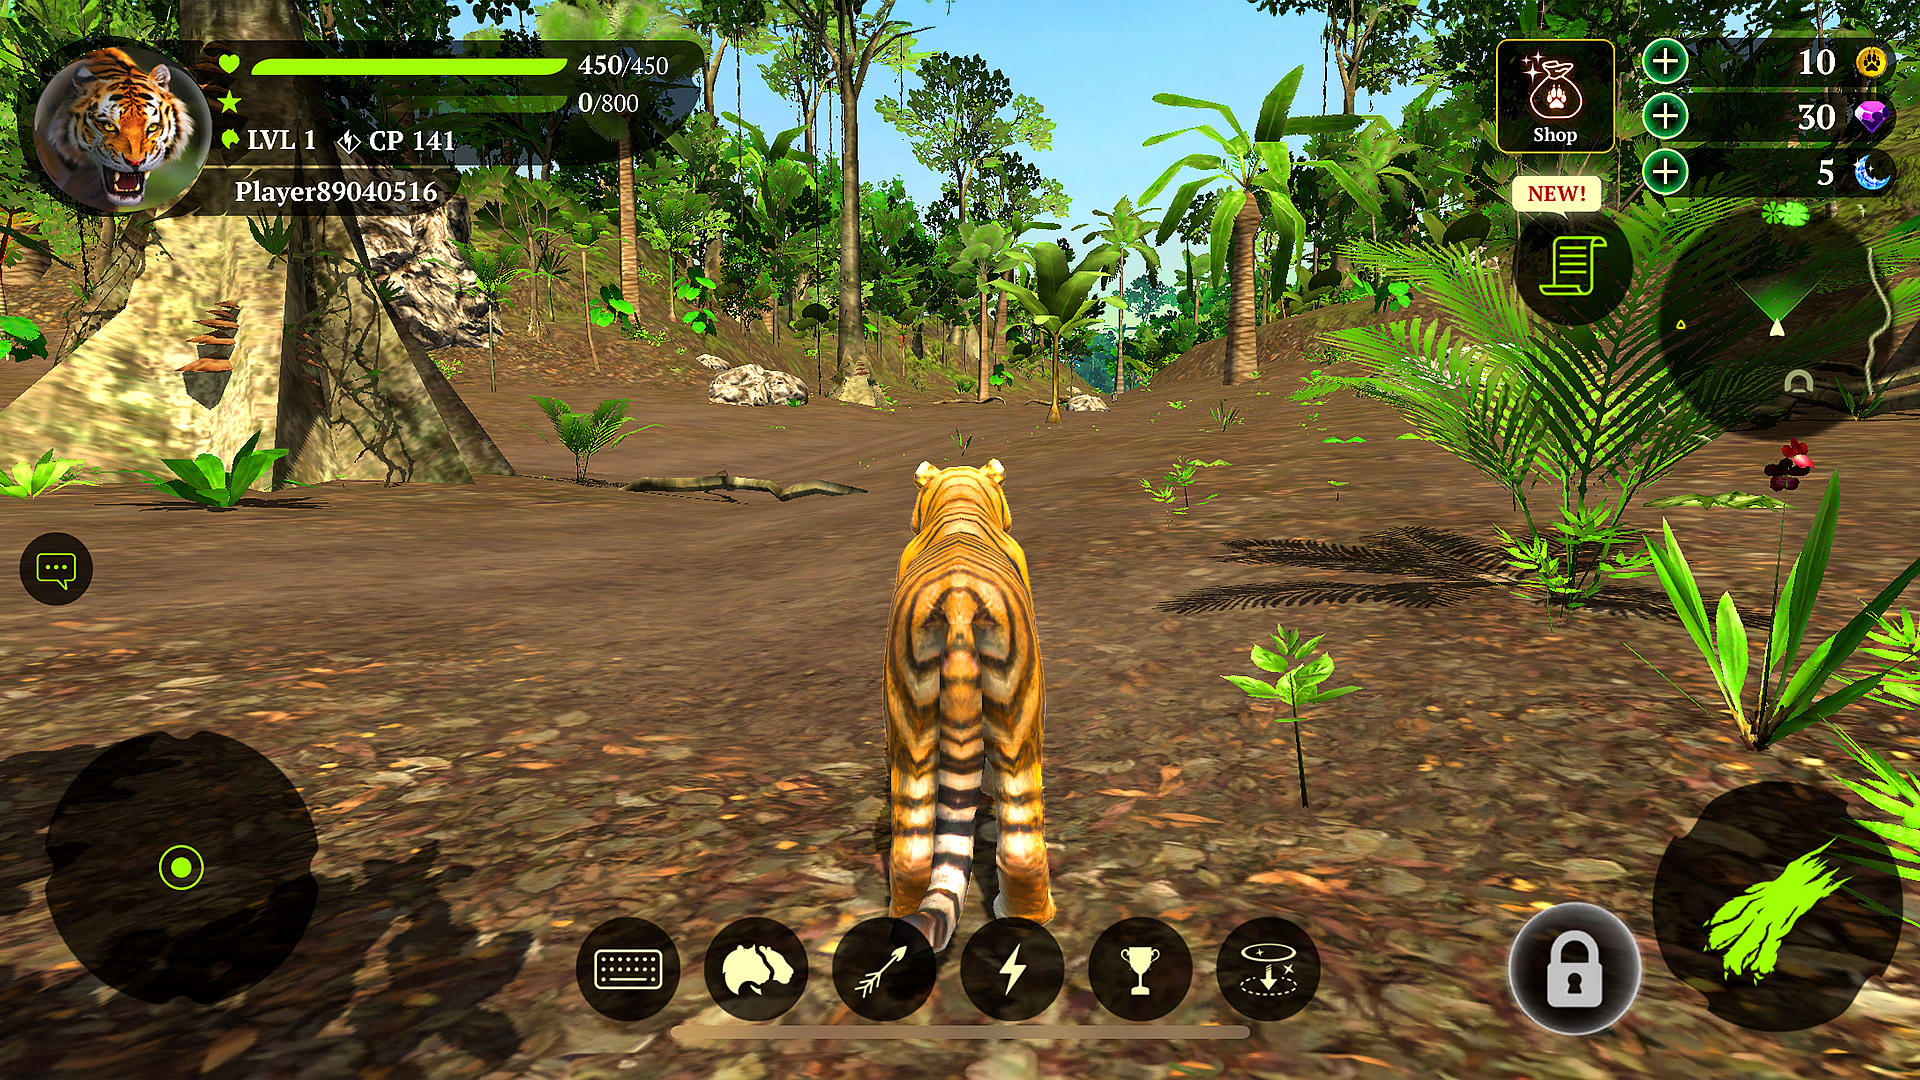 Screenshot 1 of Ang tigre 2.2.0